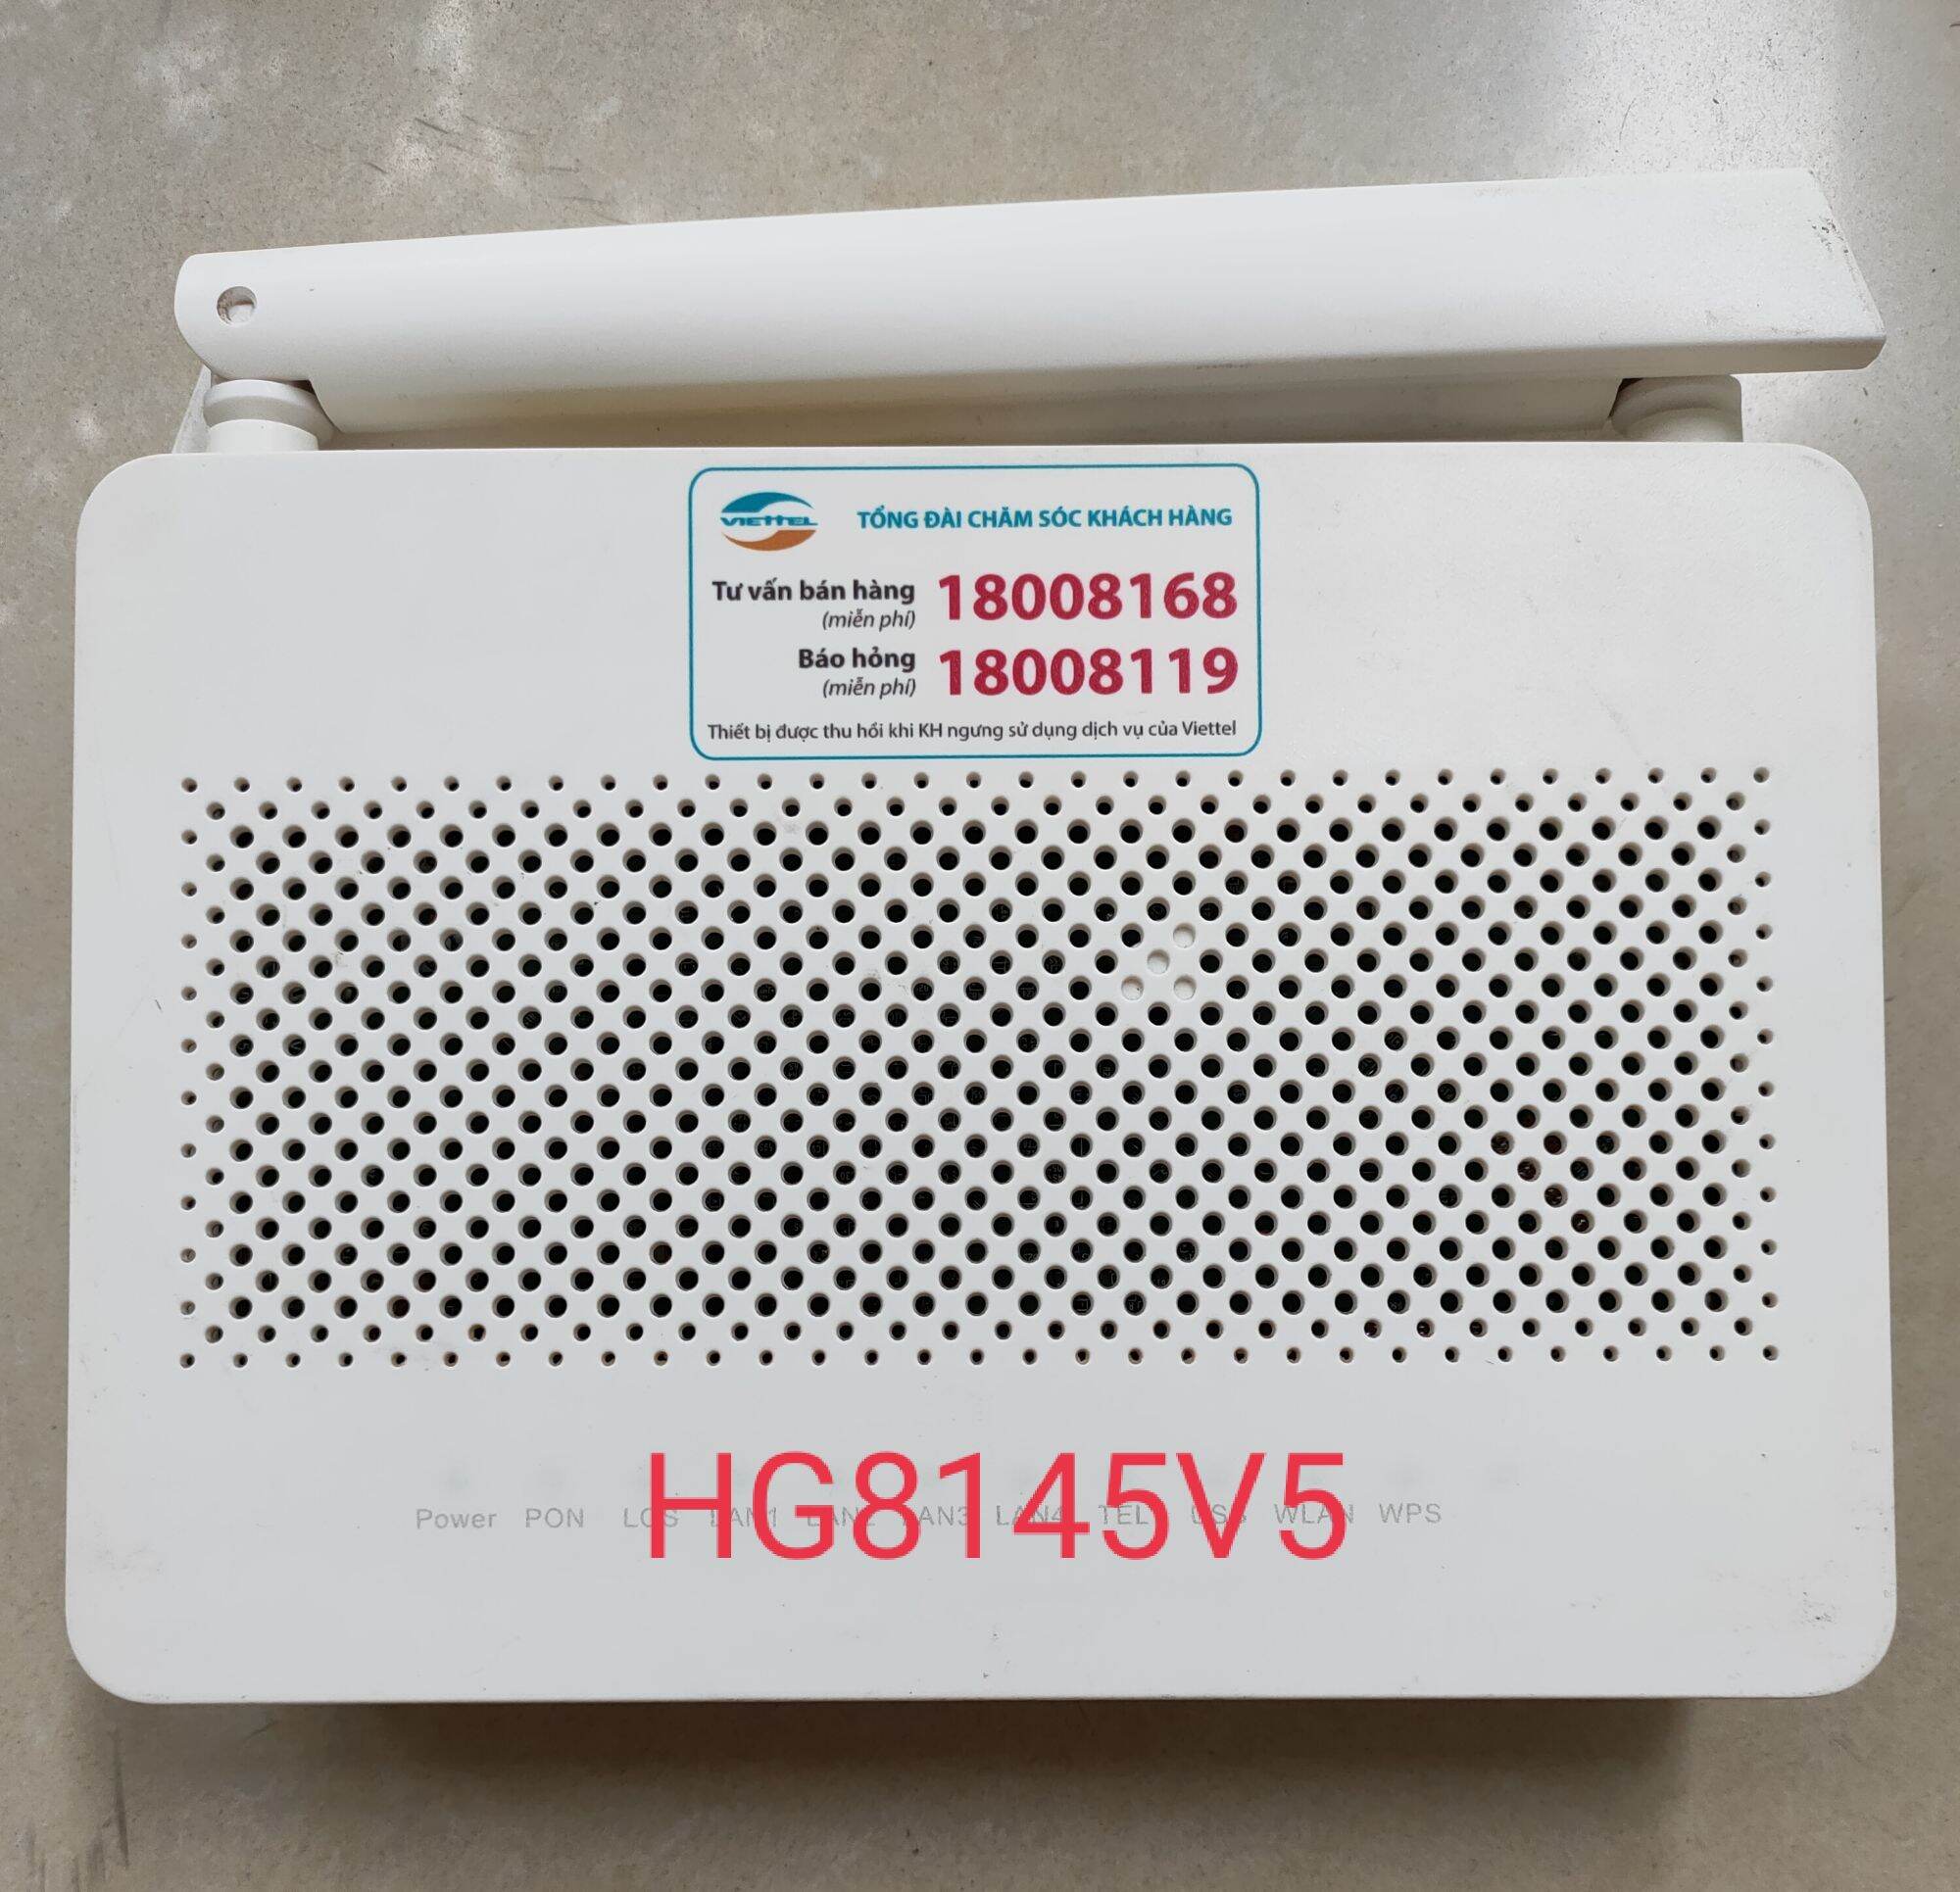 Modem GPON Viettel Huawei HG8145V5 phát wifi 2 băng tần chuẩn GPON, dùng làm Bridge Mode hoặc làm converter